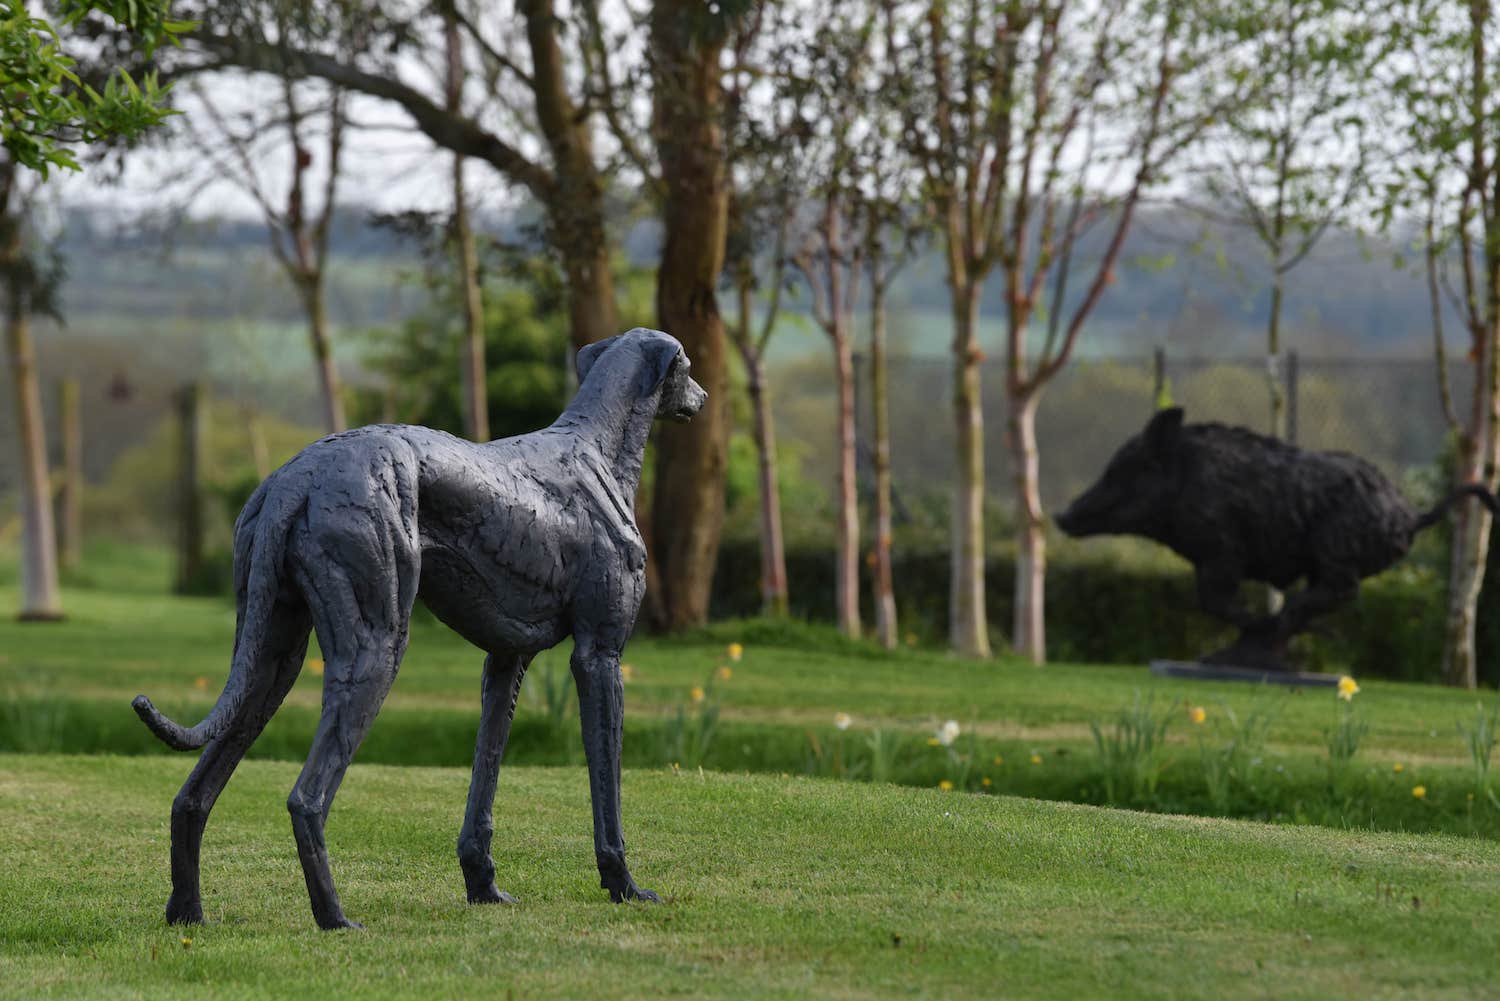 Garden with bronze sculpture of greyhound